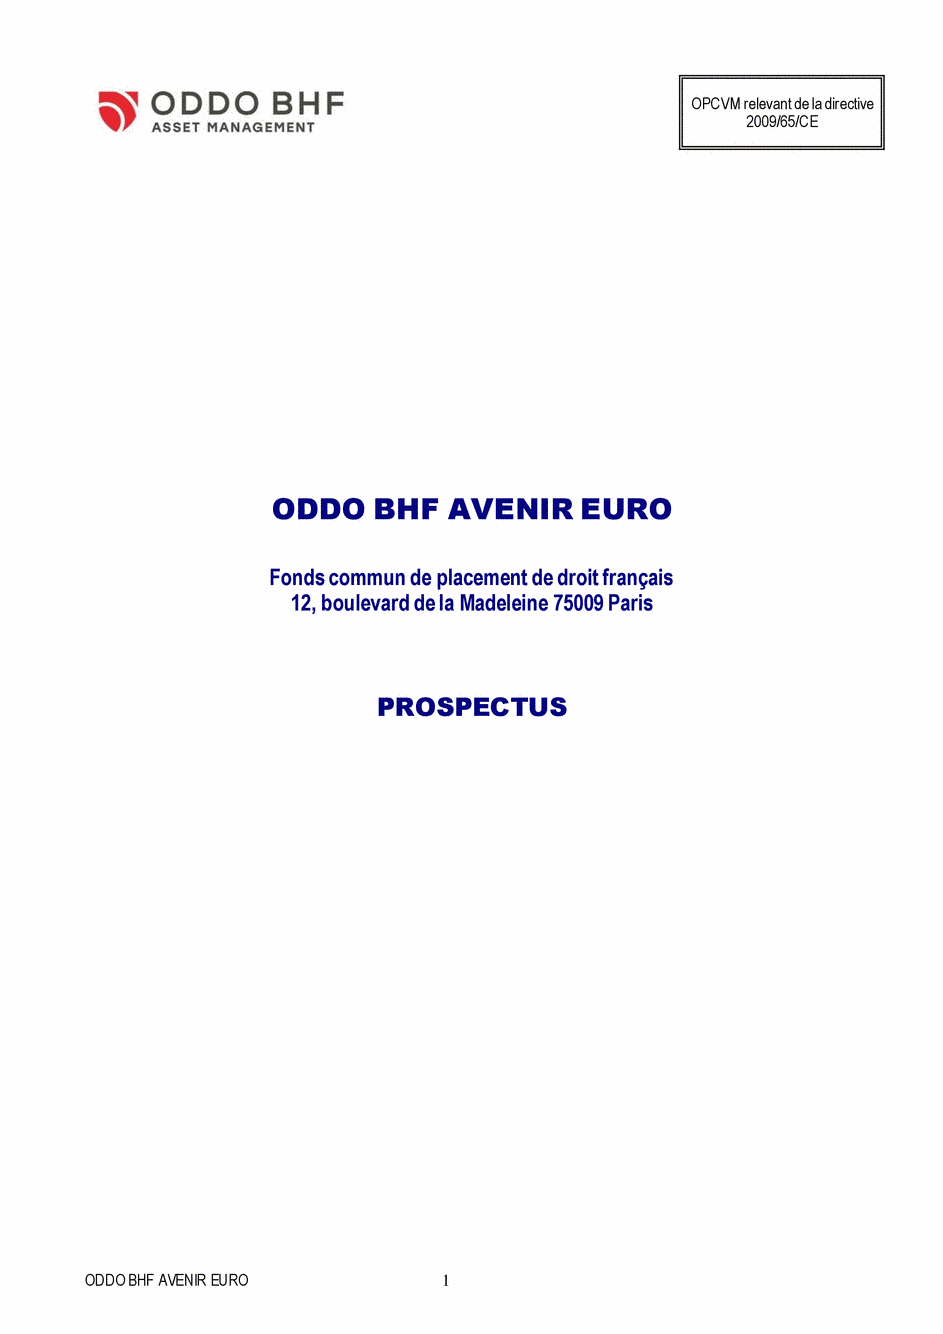 Prospectus ODDO BHF AVENIR EURO CR-USD/H - 31/03/2020 - Français